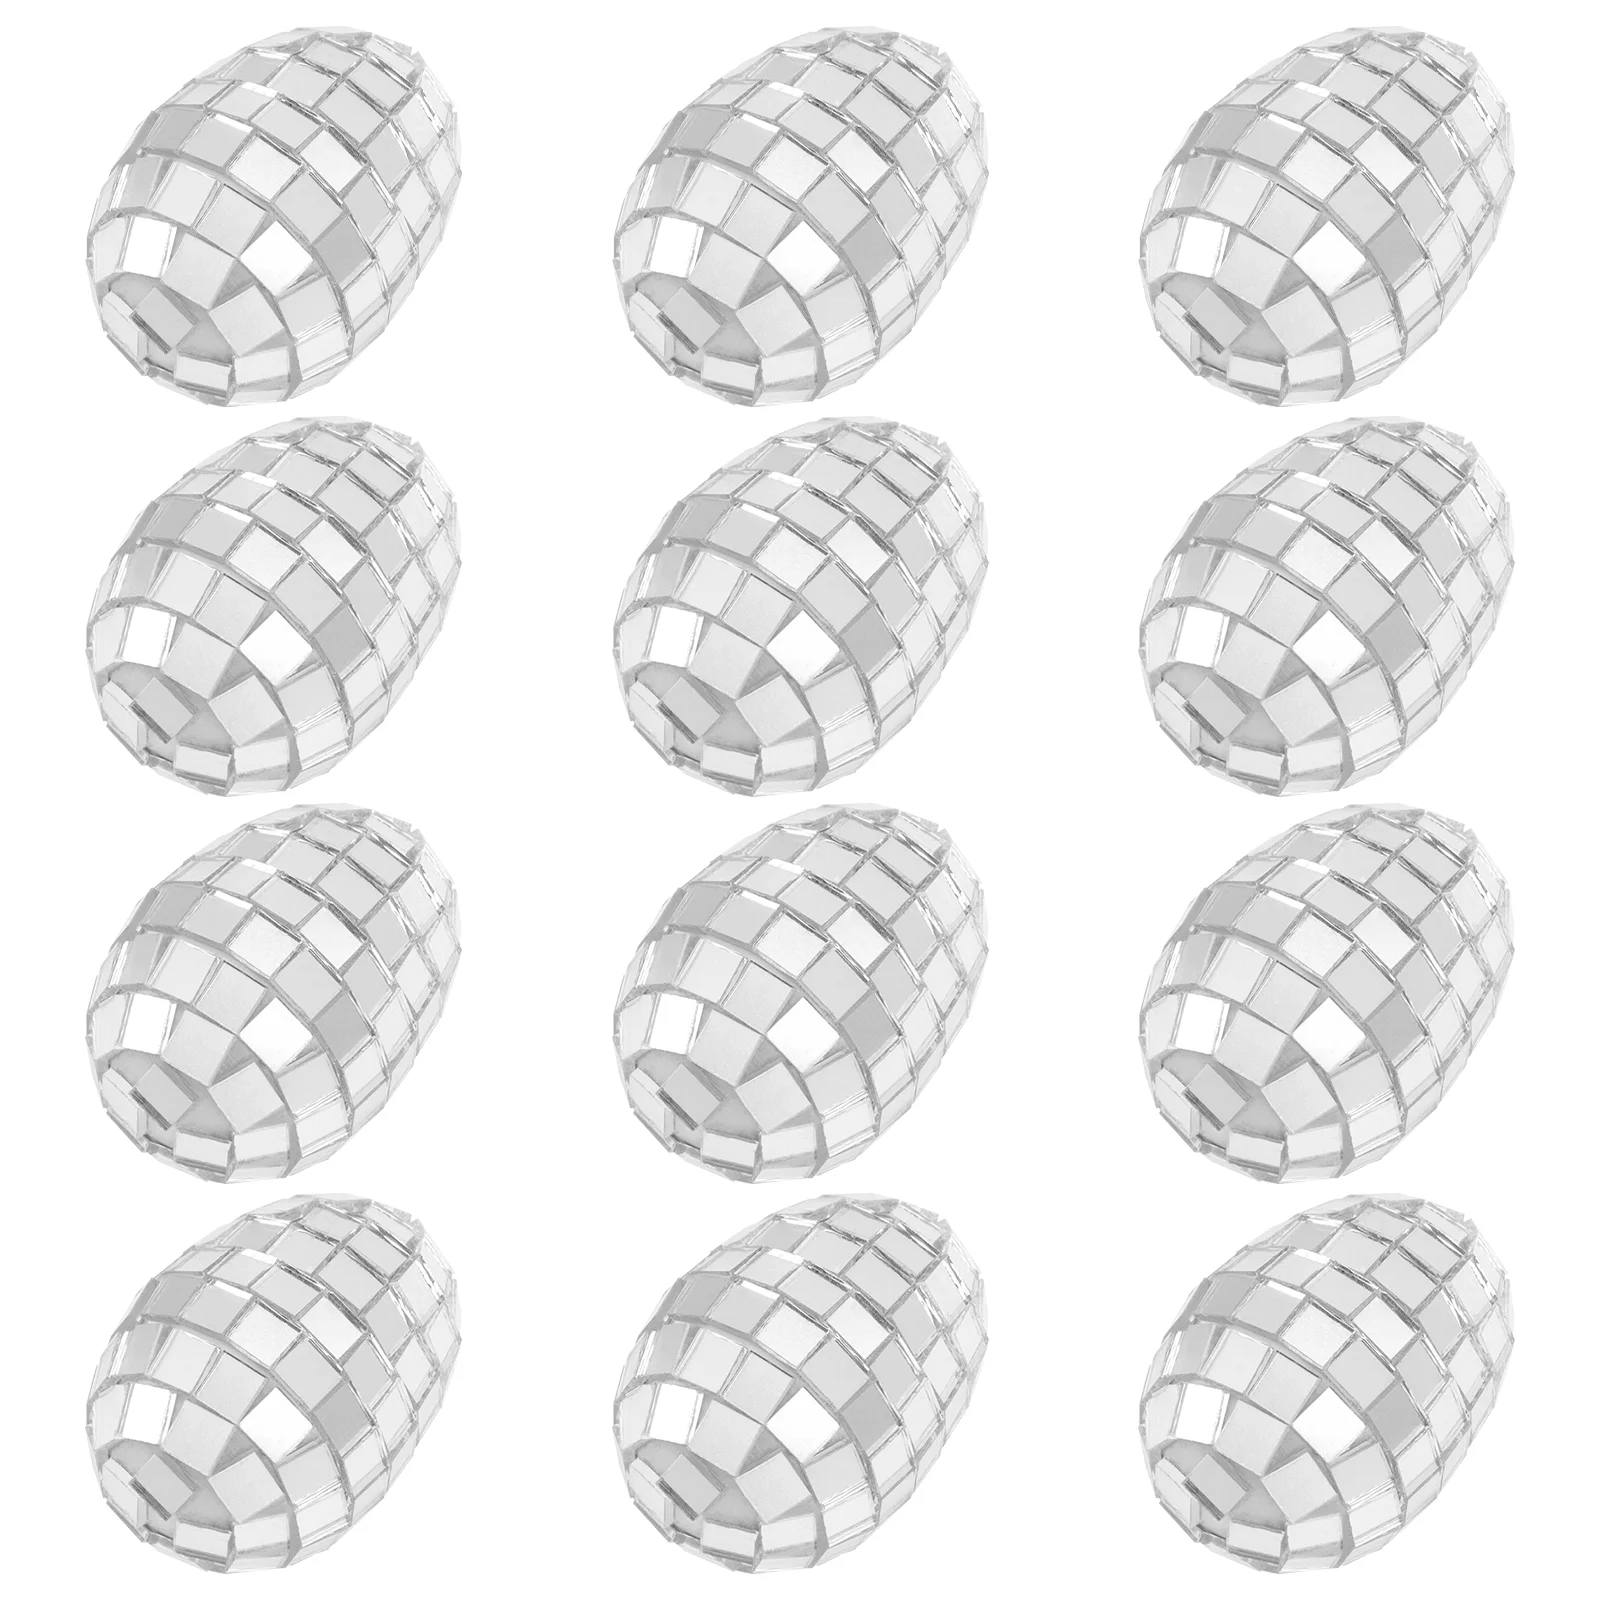 

12 шт., пасхальные отражающие зеркальные шарики в стиле 60-х годов, подвесные шарики, уличное украшение, зеркальные пасхальные украшения для яиц, подвеска в виде пасхальных яиц